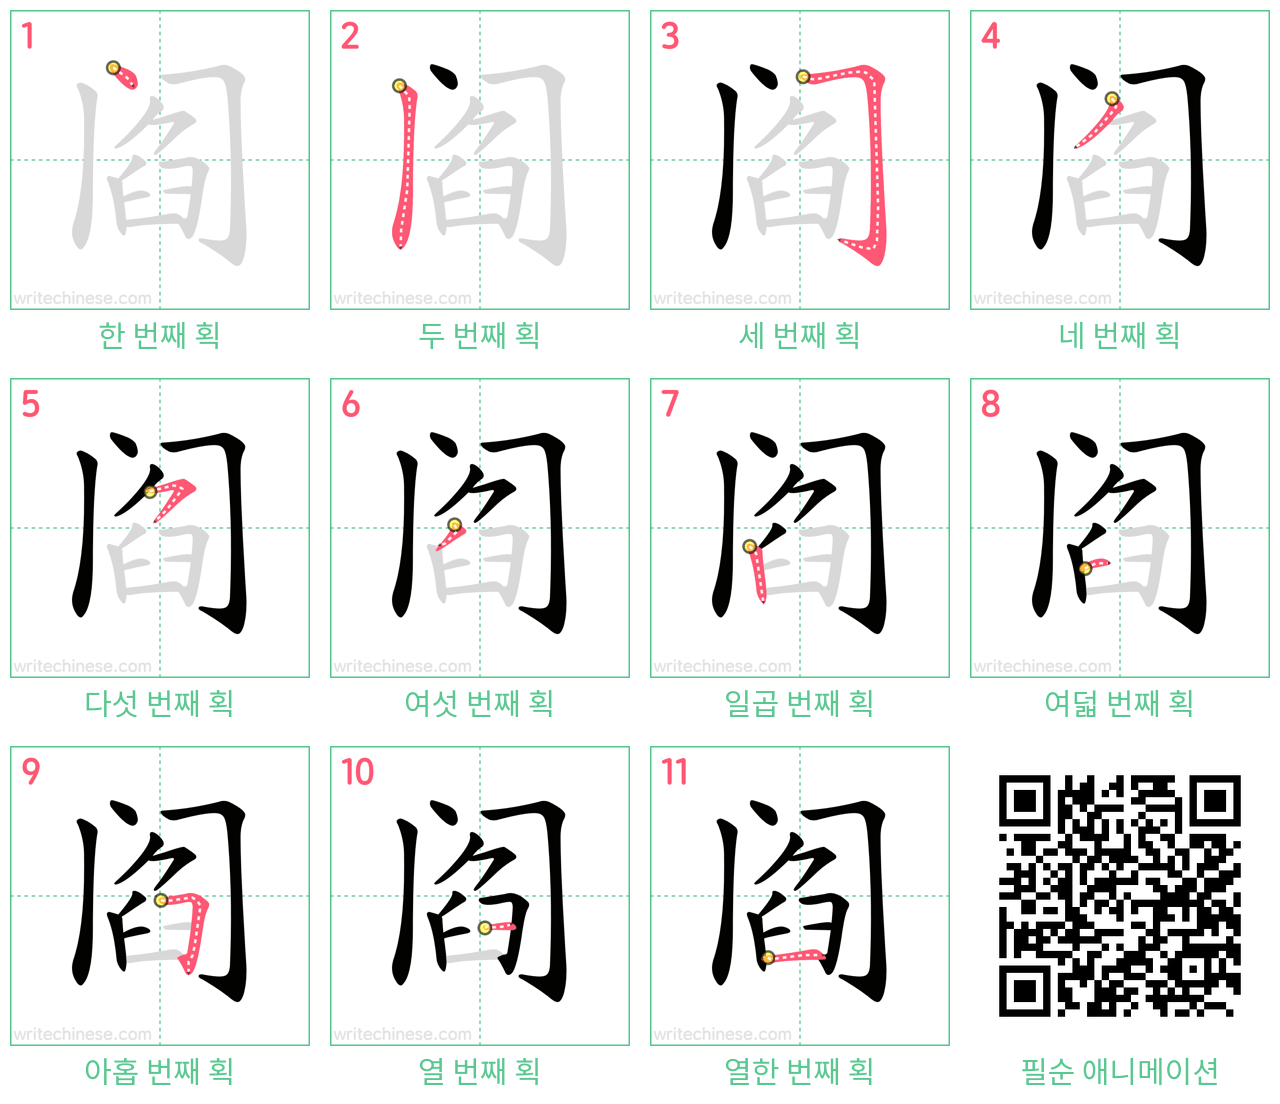 阎 step-by-step stroke order diagrams